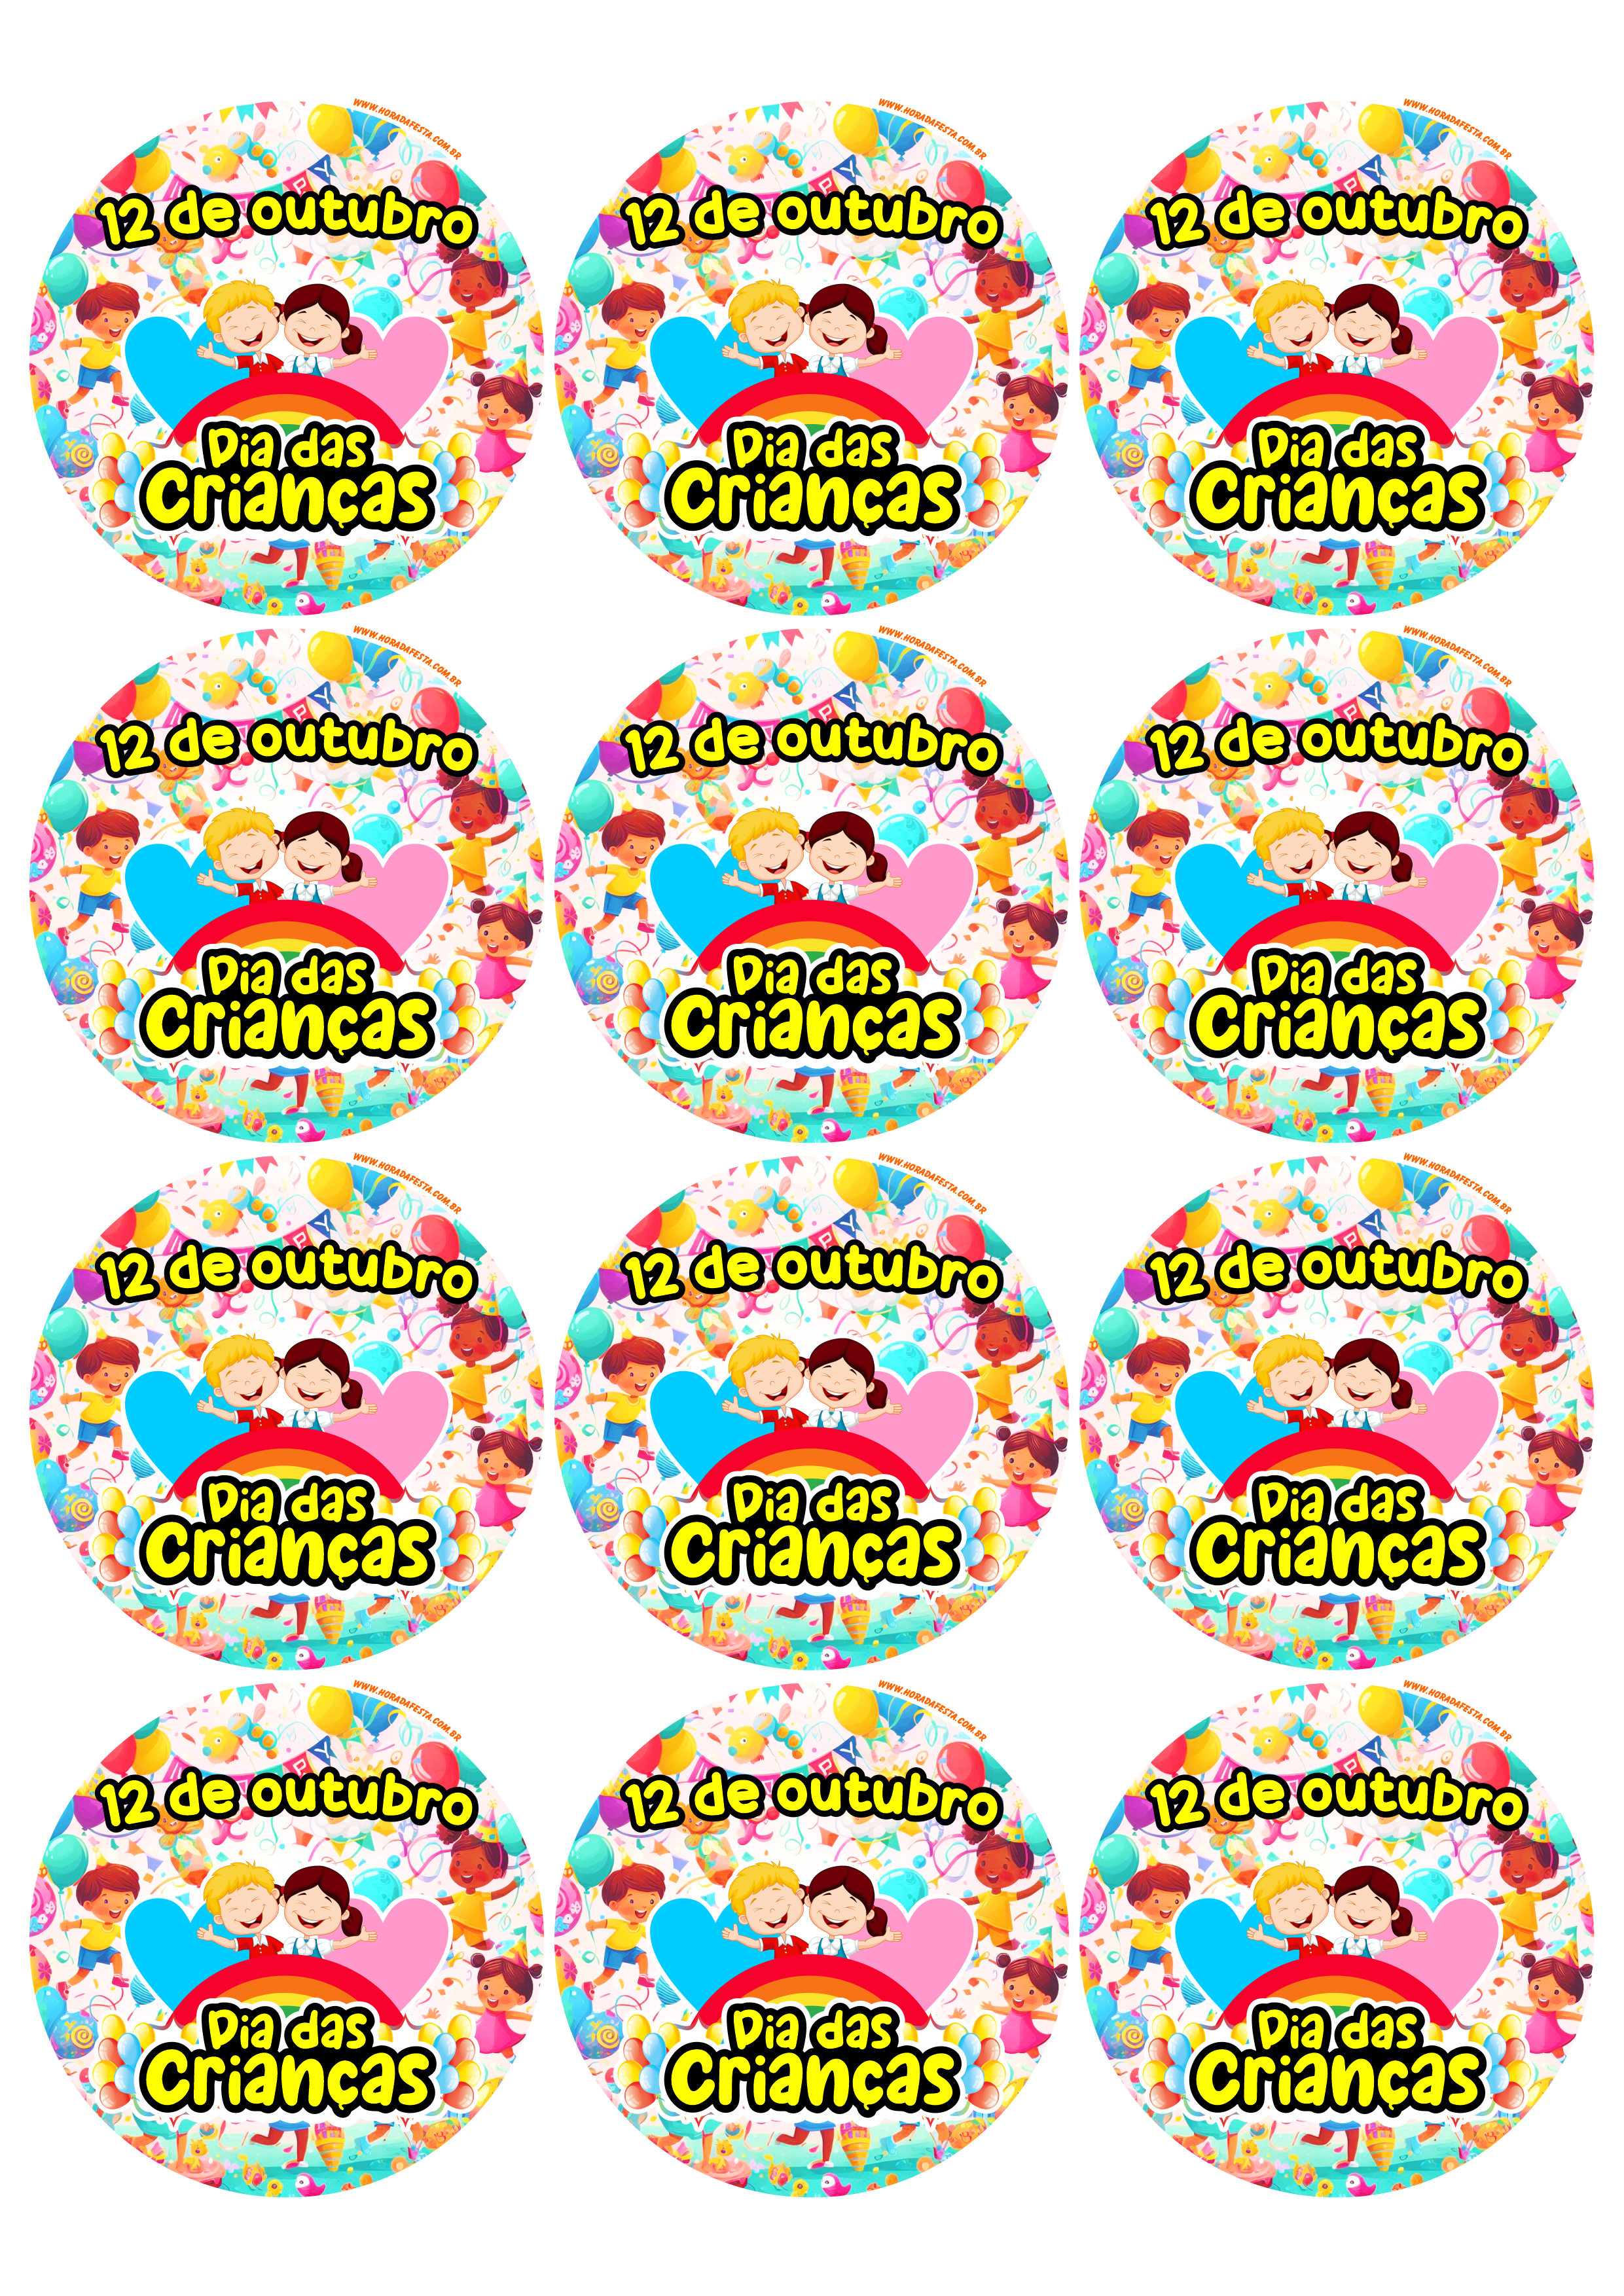 Dia das crianças 12 de outubro adesivo tag sticker etiqueta para decoração redondo 12 imagens png